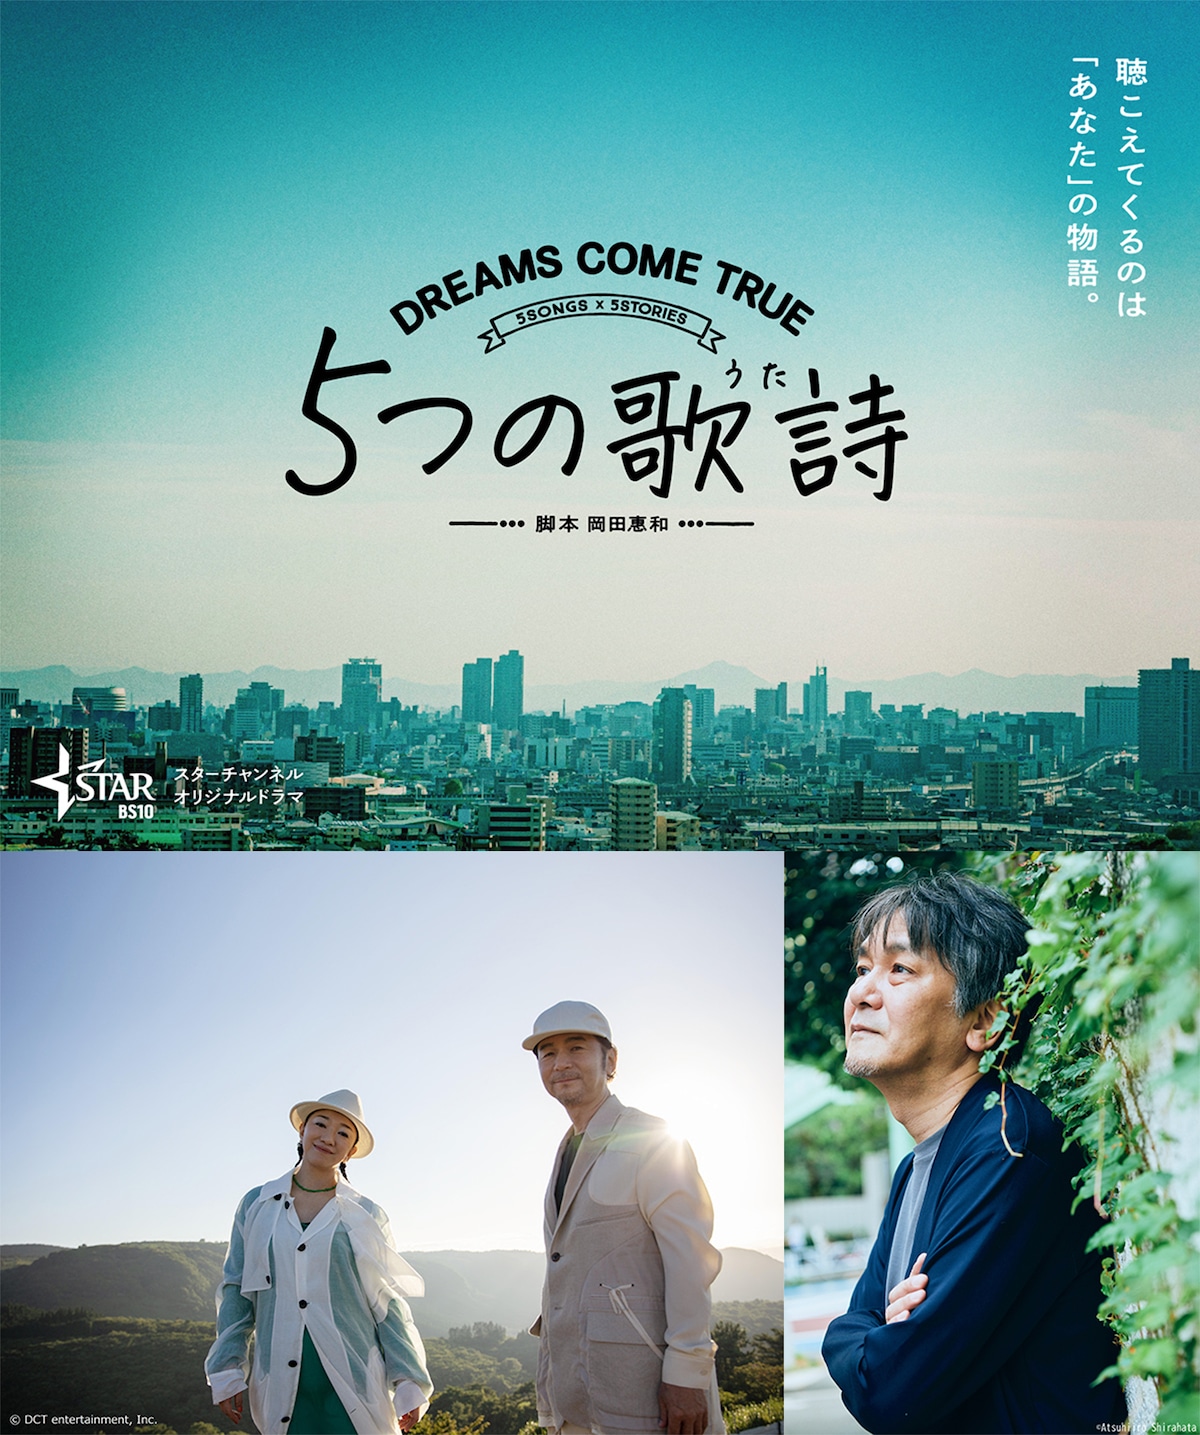 オリジナルドラマプロジェクト「5 つの歌詩」ポスター